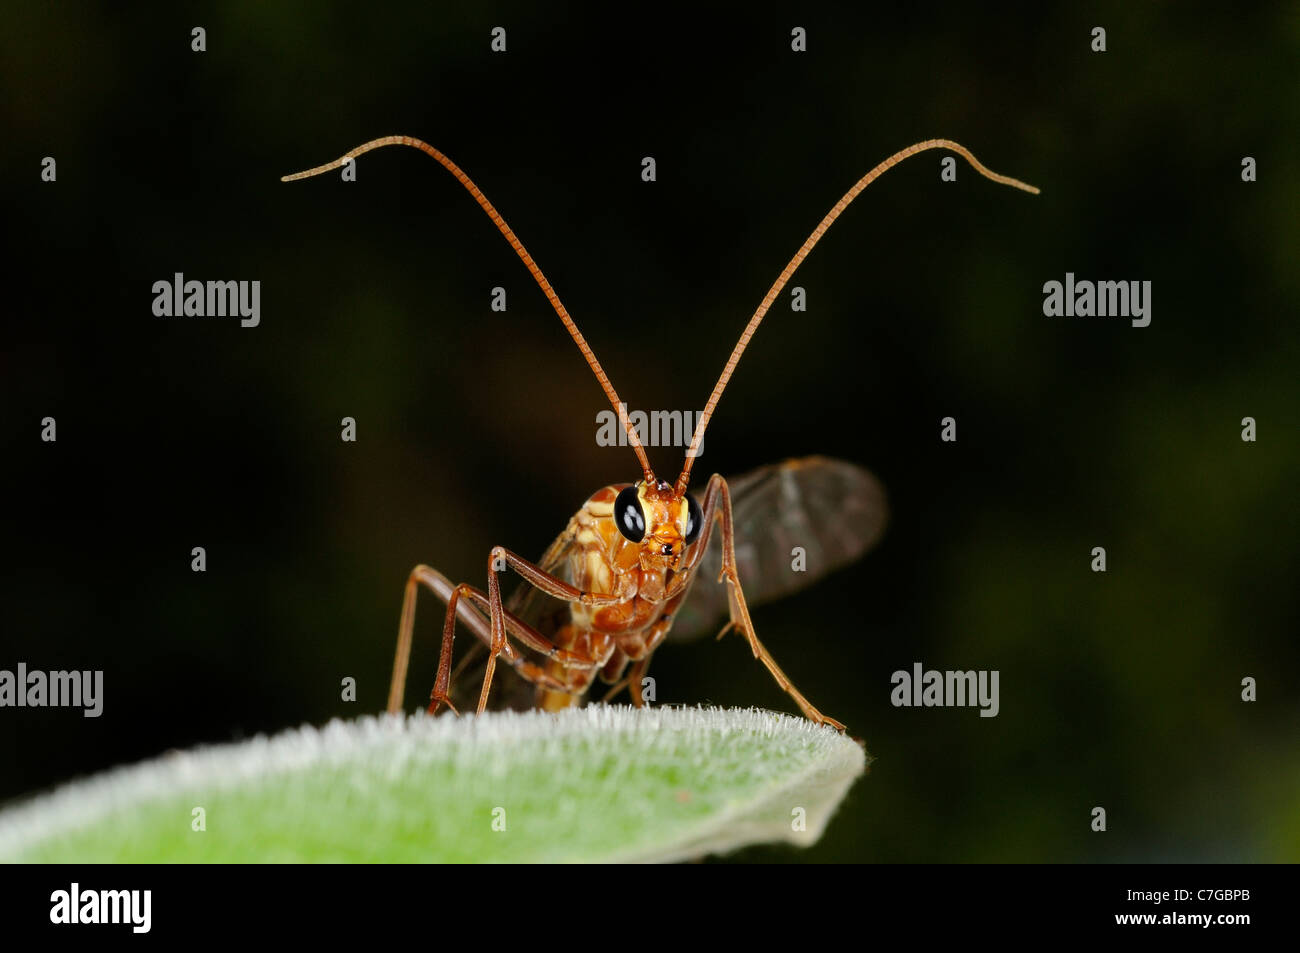 Ichneumon Fly (Ichneumonidae) in appoggio sulla lamina, Oxfordshire, Regno Unito Foto Stock